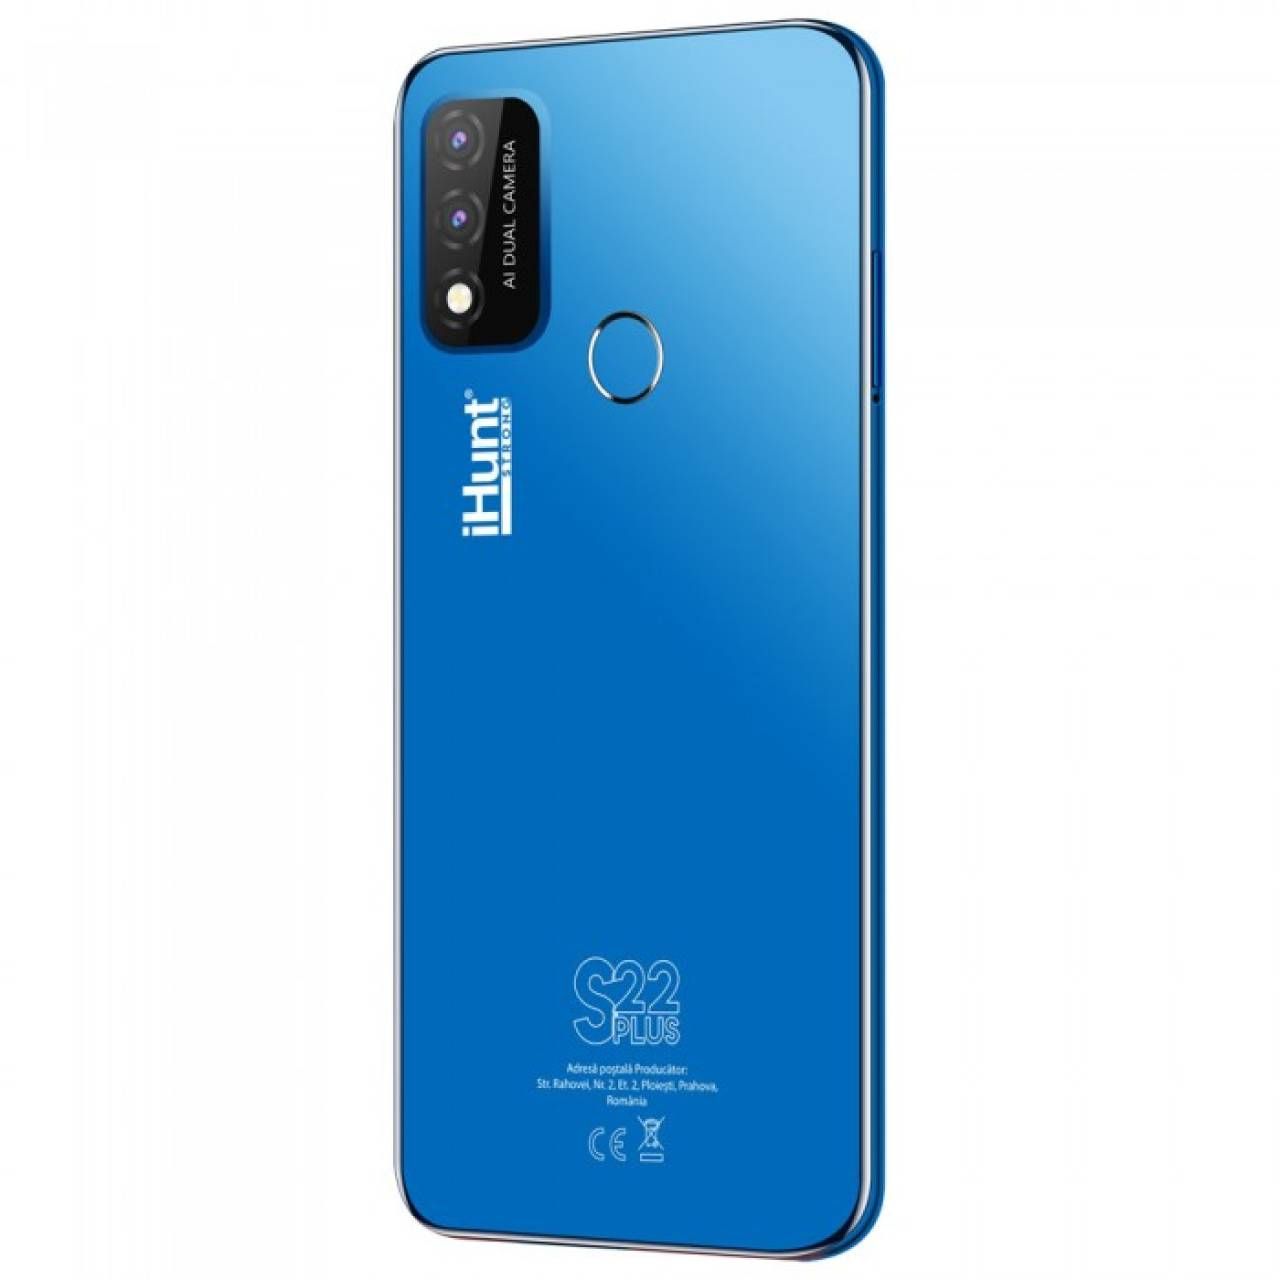 Telefon Mobil iHunt S22 Plus Blue, 4G, 16GB, 2GB RAM, Display 6.1